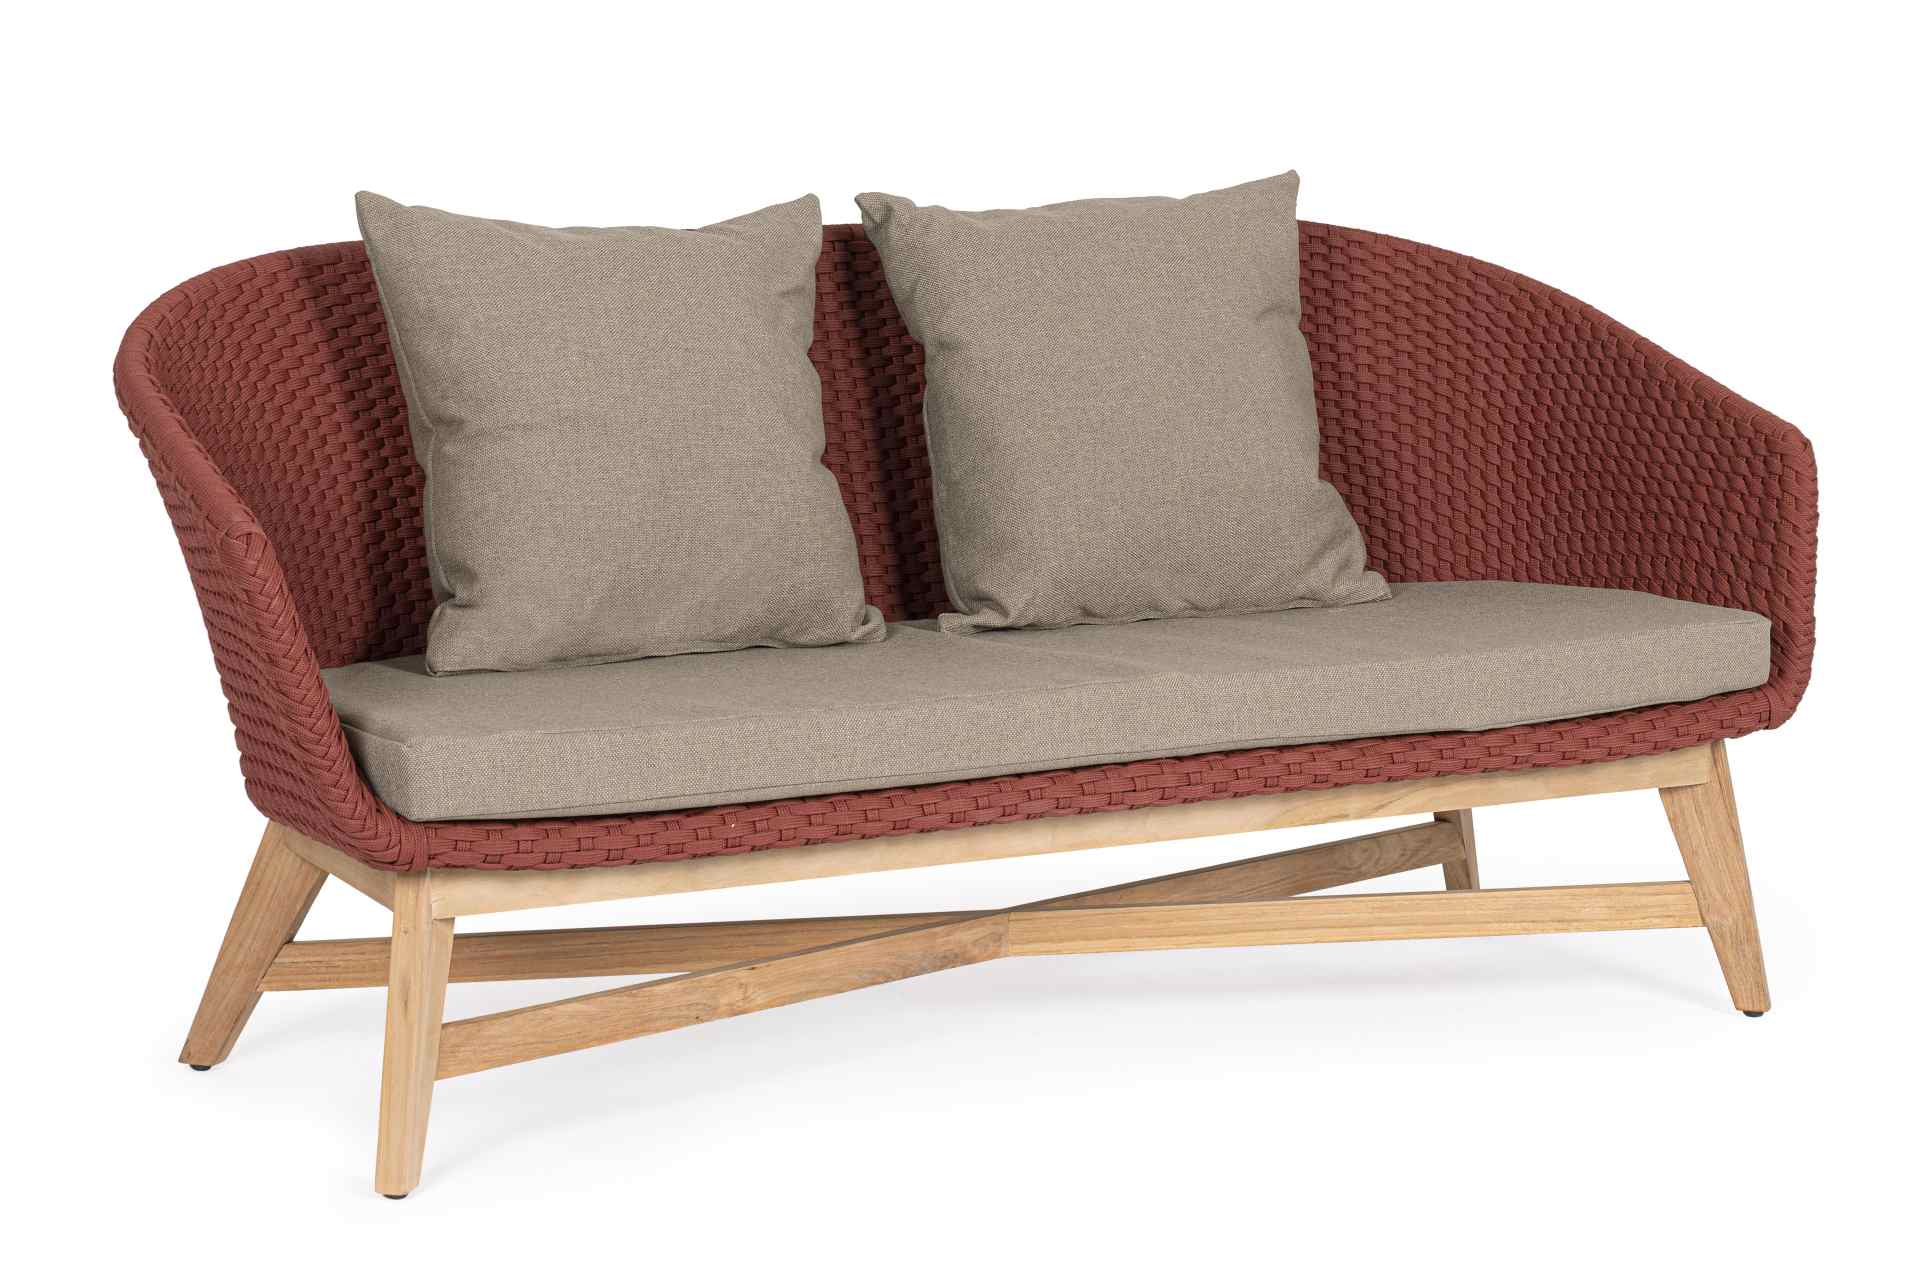 Das Gartensofa Coachella überzeugt mit seinem modernen Design. Gefertigt wurde es aus Olefin-Stoff, welcher einen roten Farbton besitzt. Das Gestell ist aus Teakholz und hat eine natürliche Farbe. Das Sofa verfügt über eine Sitzhöhe von 39 cm und ist für 